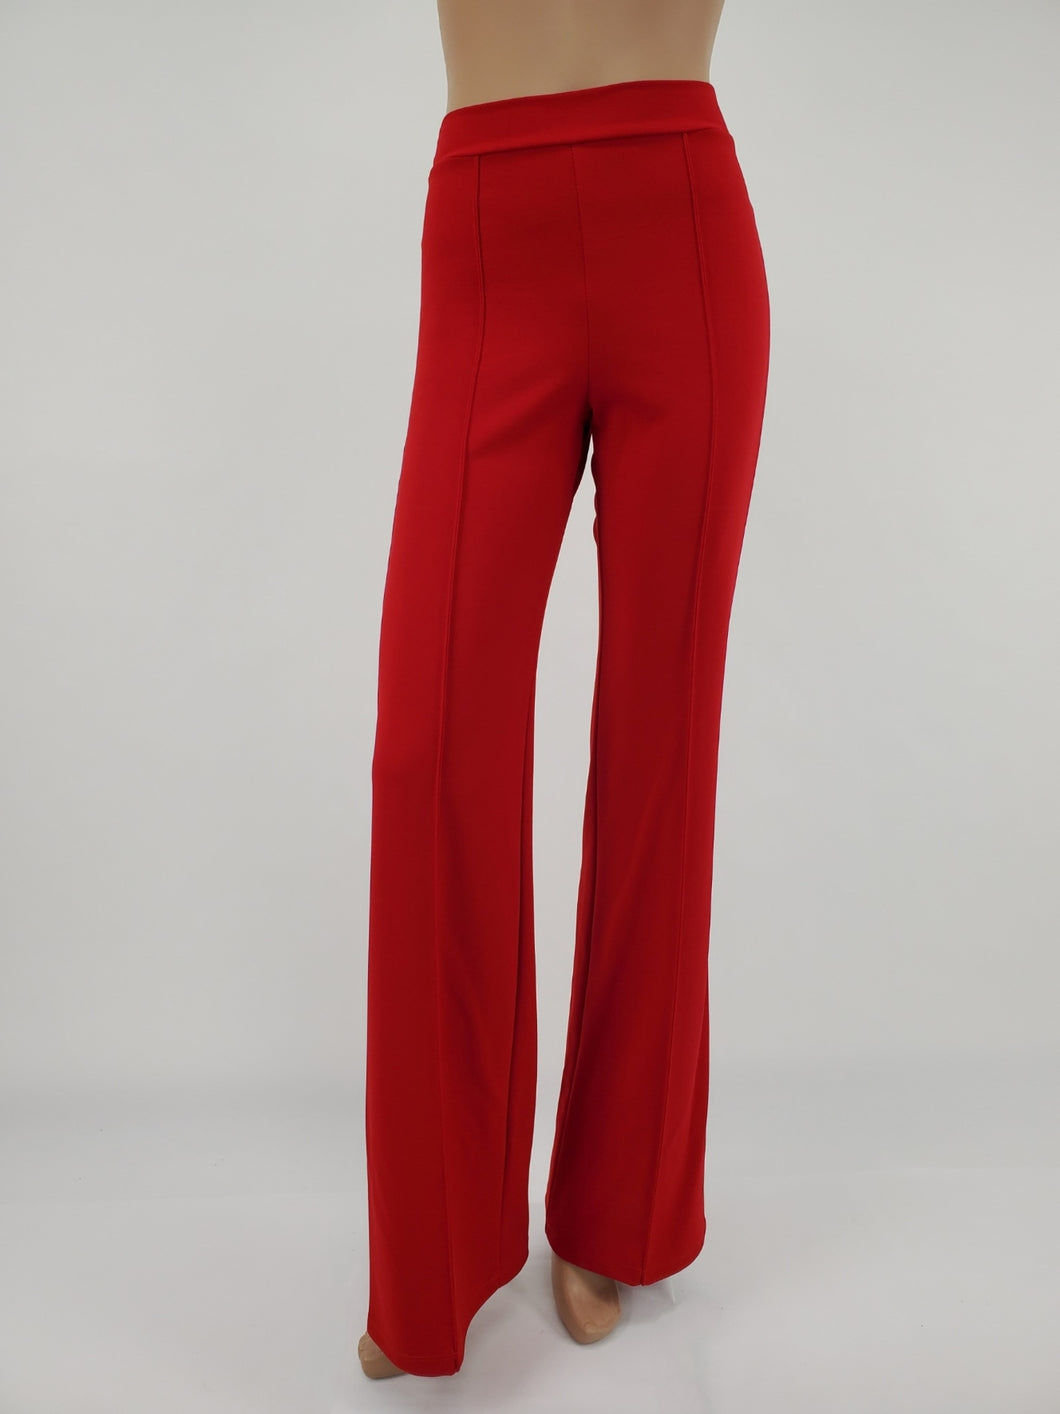 High Waist Front Pintuck Pants with Zipper (Red)